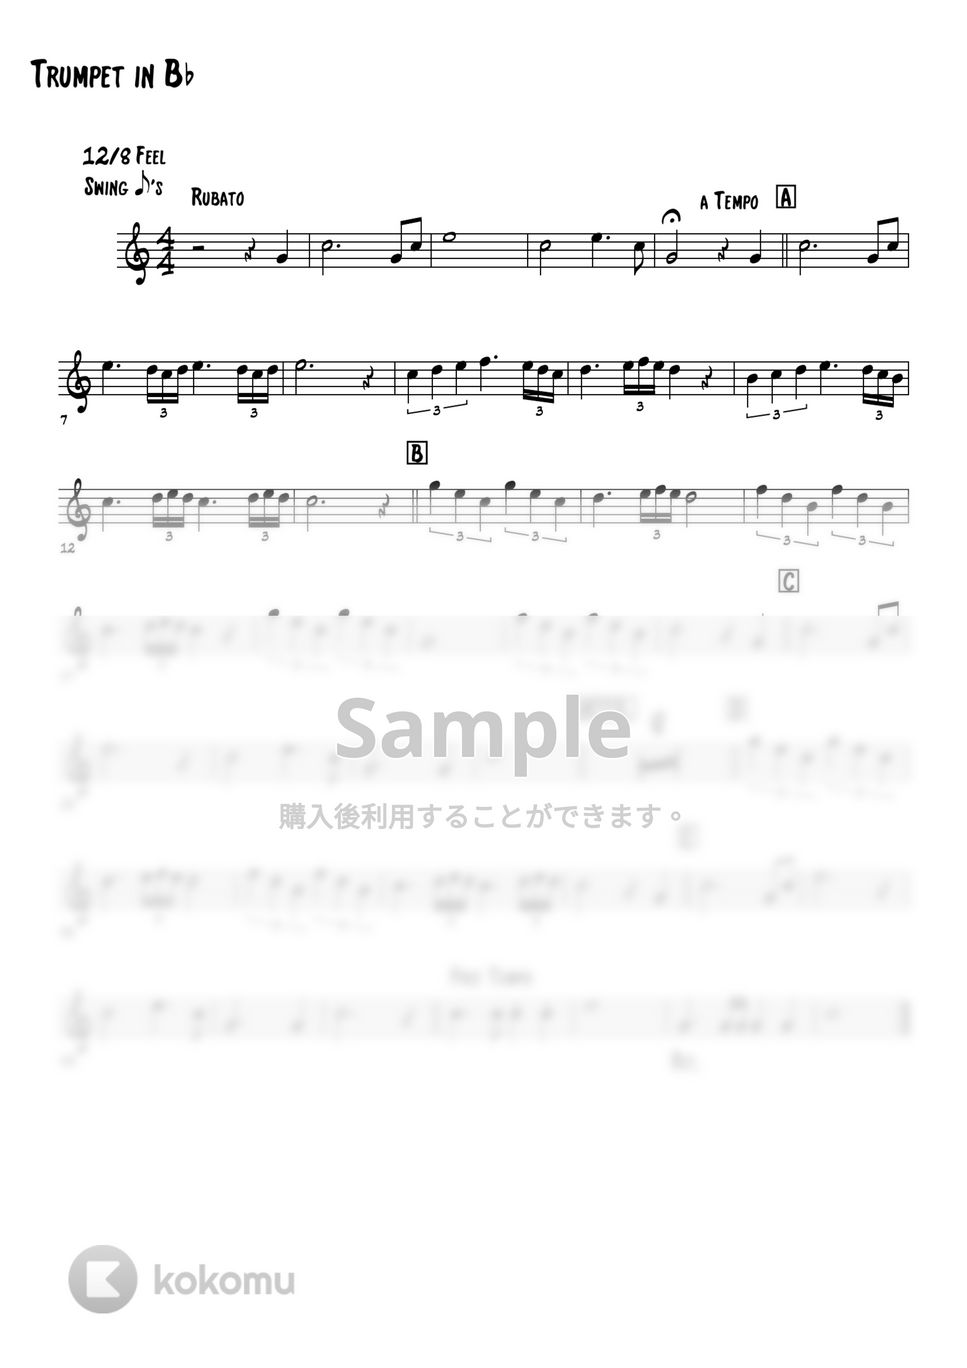 ニニ・ロッソ - 夜空のトランペット (トランペットメロディー楽譜) by 高田将利